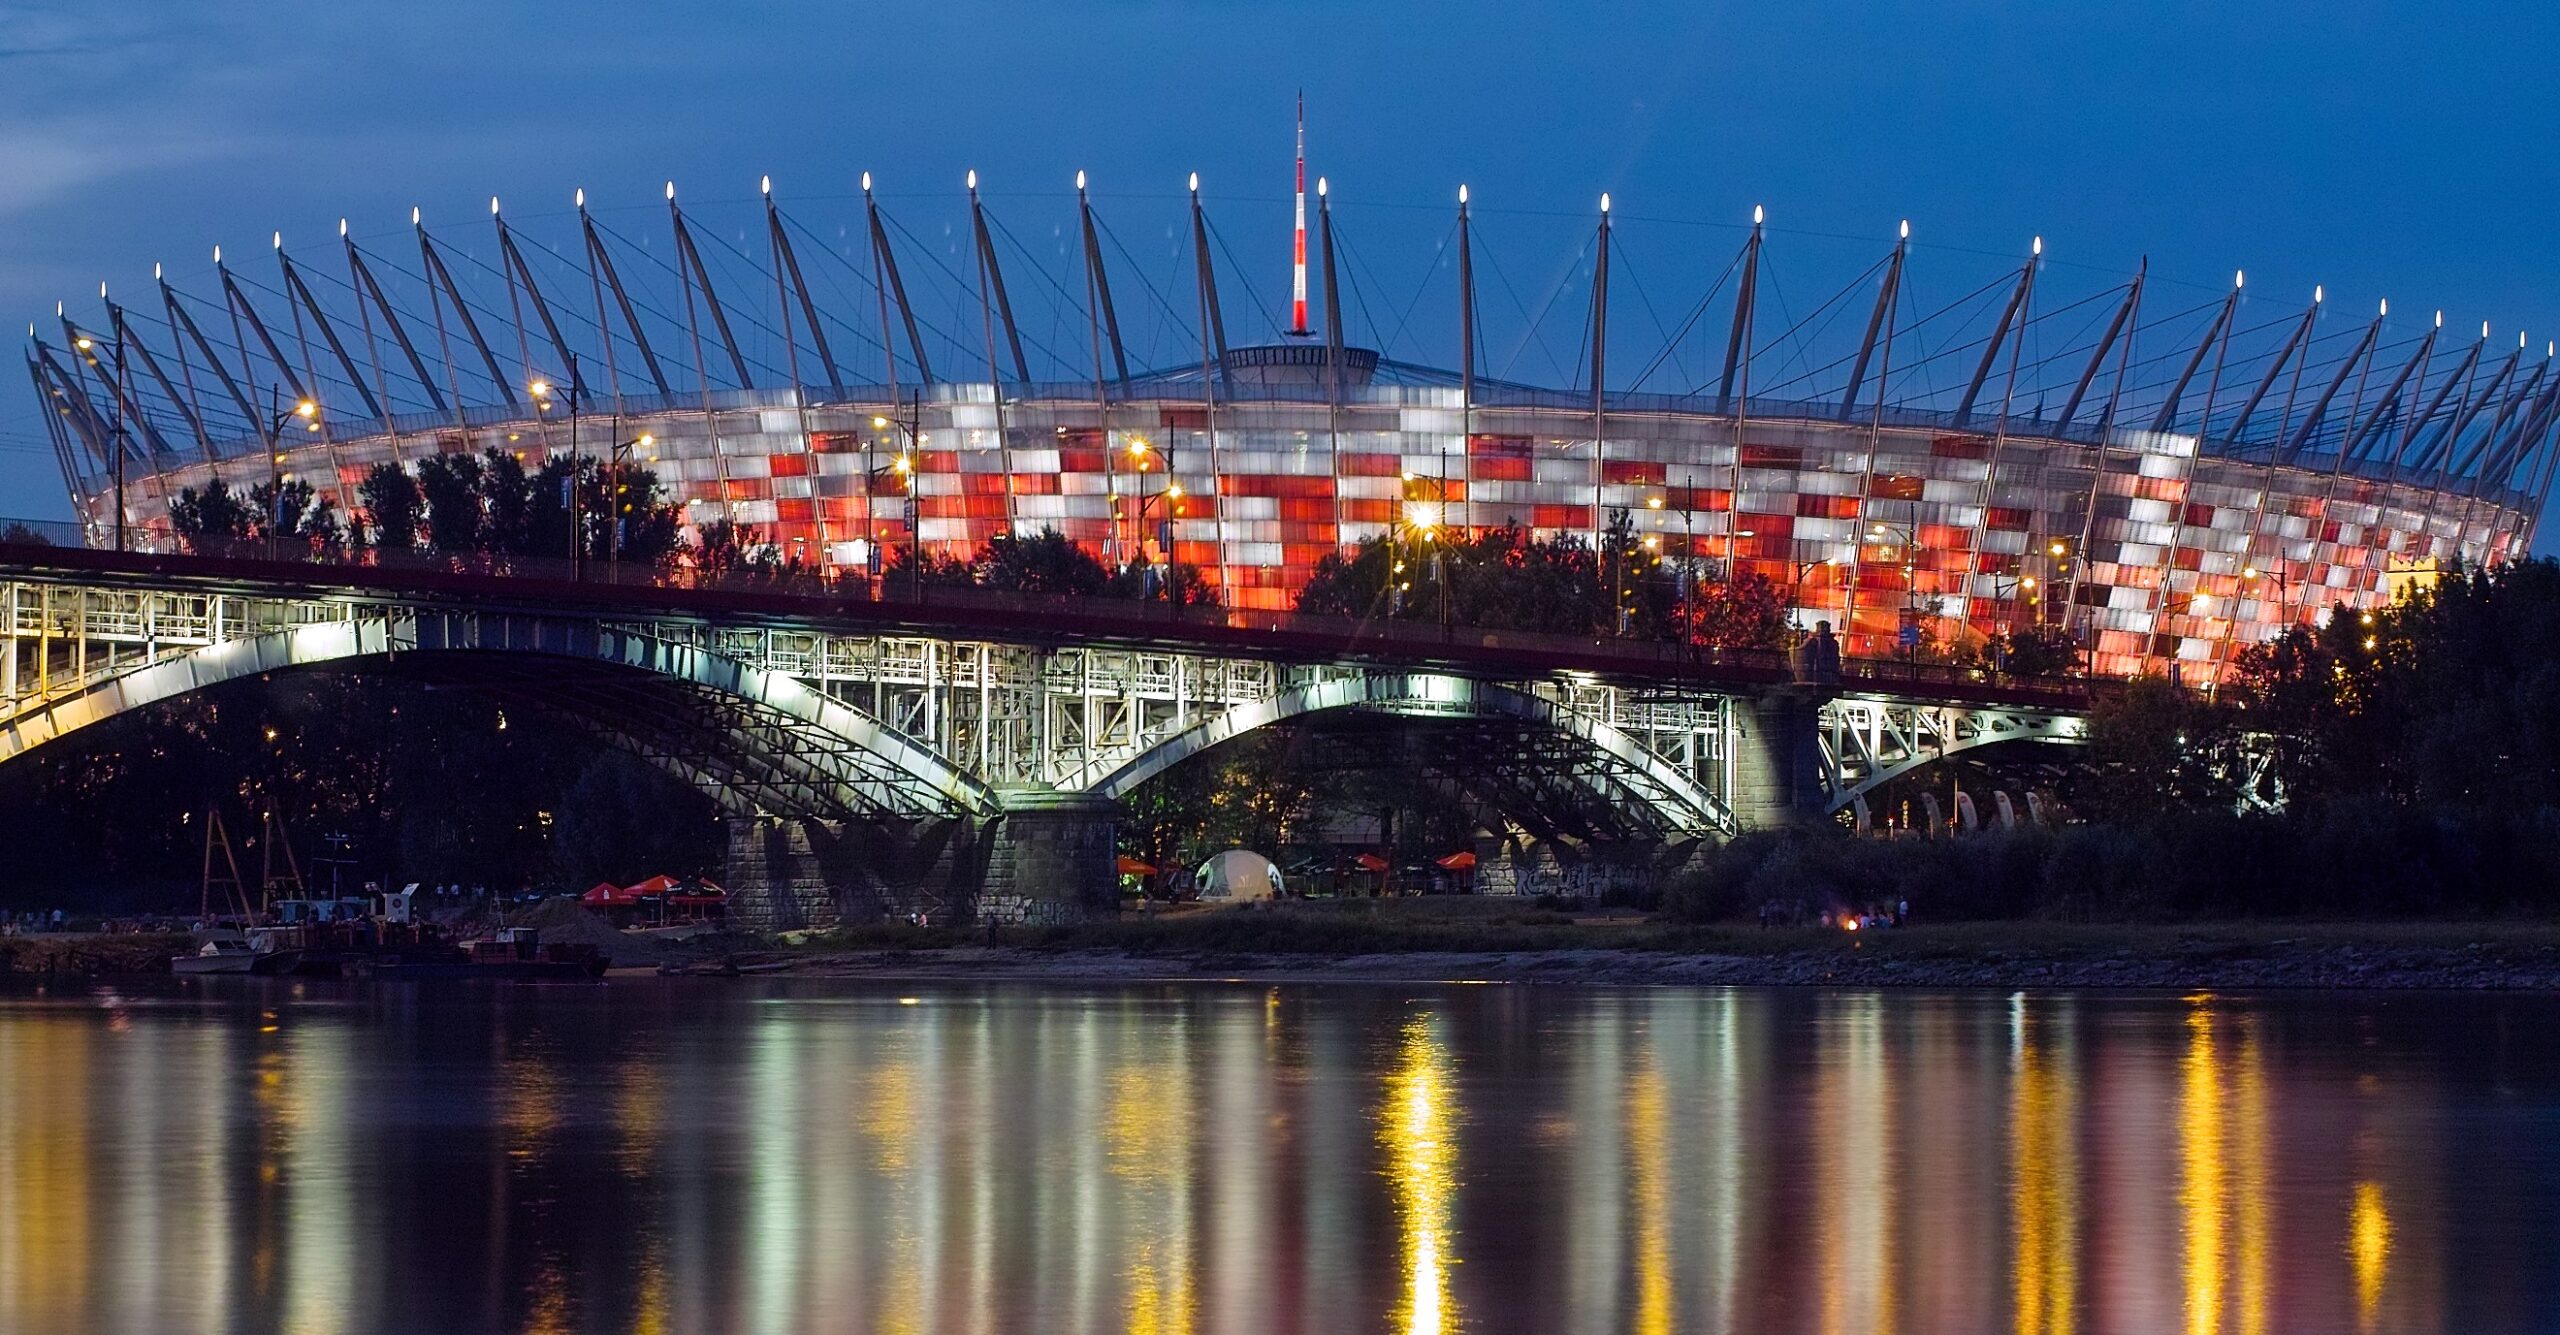 Polski stadion narodowy został zamknięty z powodu uszkodzenia dachu, co oznaczało przełożenie meczu z Chile